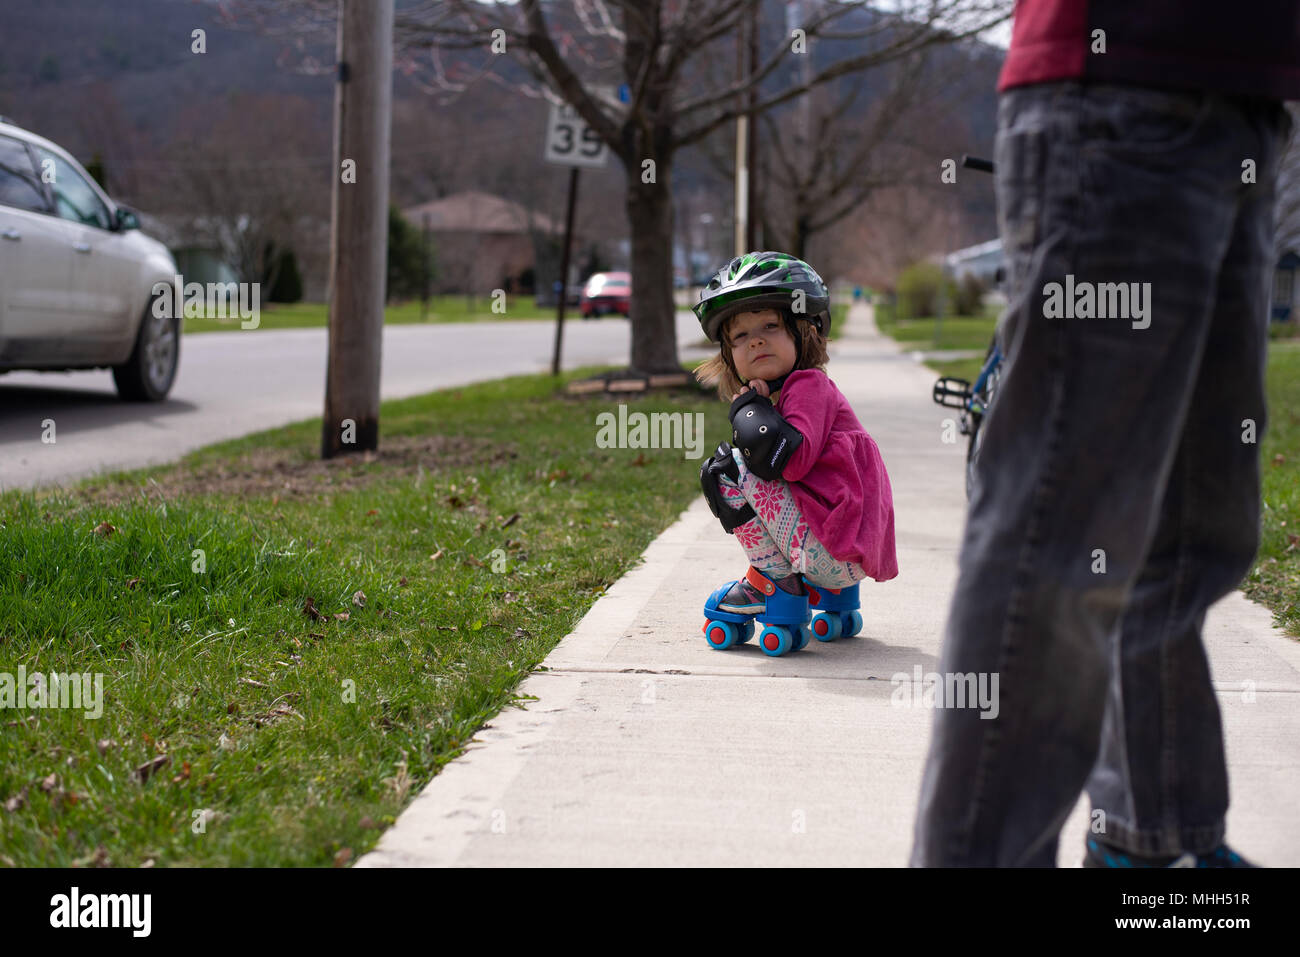 Kleinkind Mädchen mit Knie- und Ellenbogenschützer, Skates auf. Stockfoto